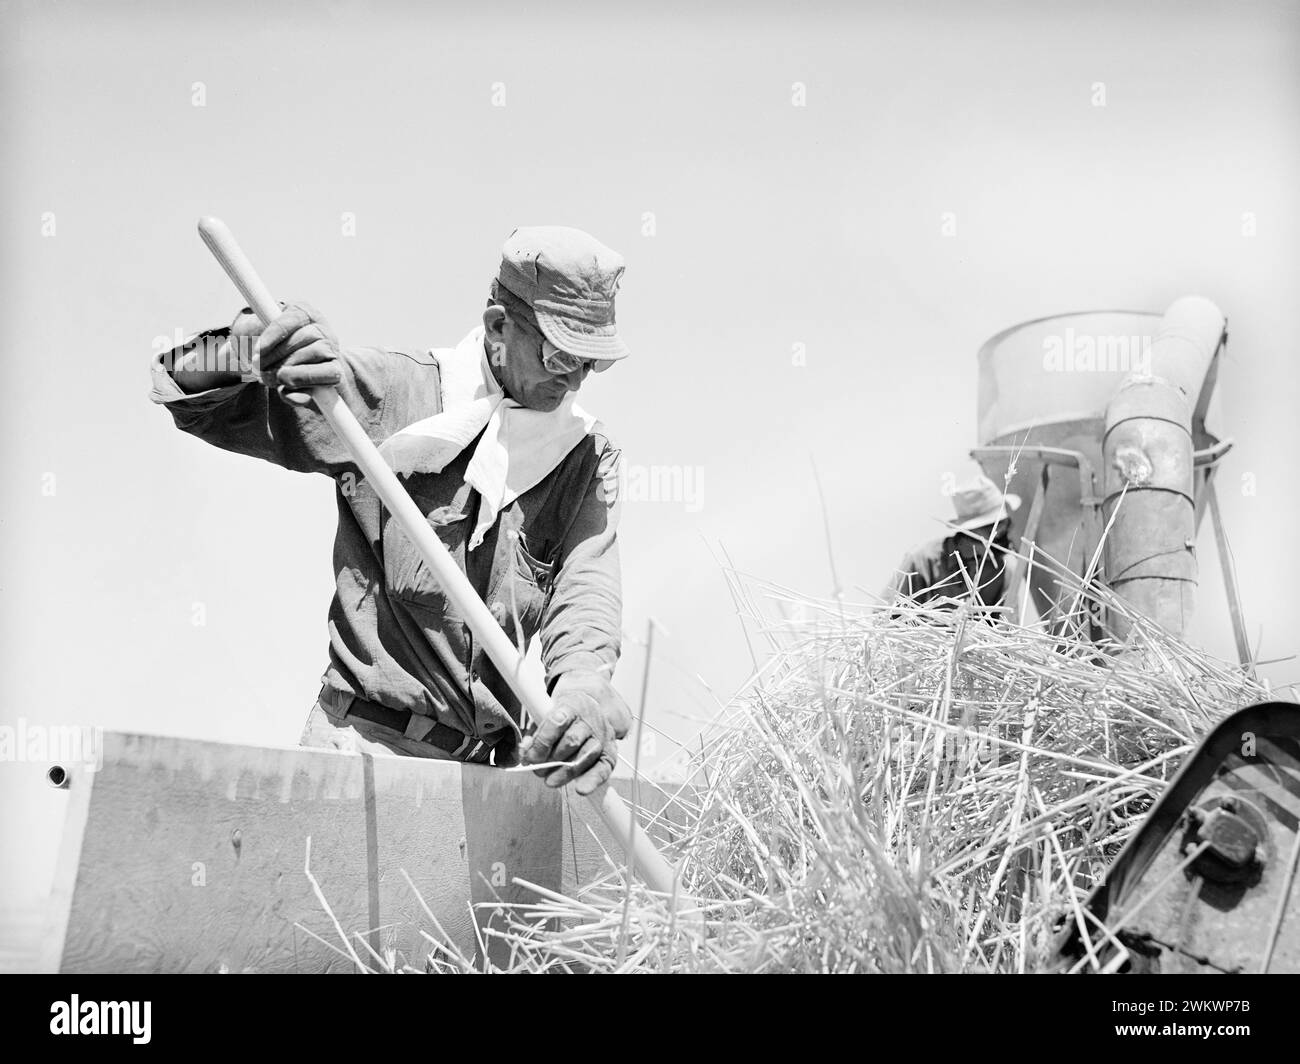 Ouvrier agricole chez le hacheur de foin, Casa Grande Valley Farms, comté de Pinal, Arizona, États-Unis, Russell Lee, U.S. Farm Security Administration, mai 1940 Banque D'Images